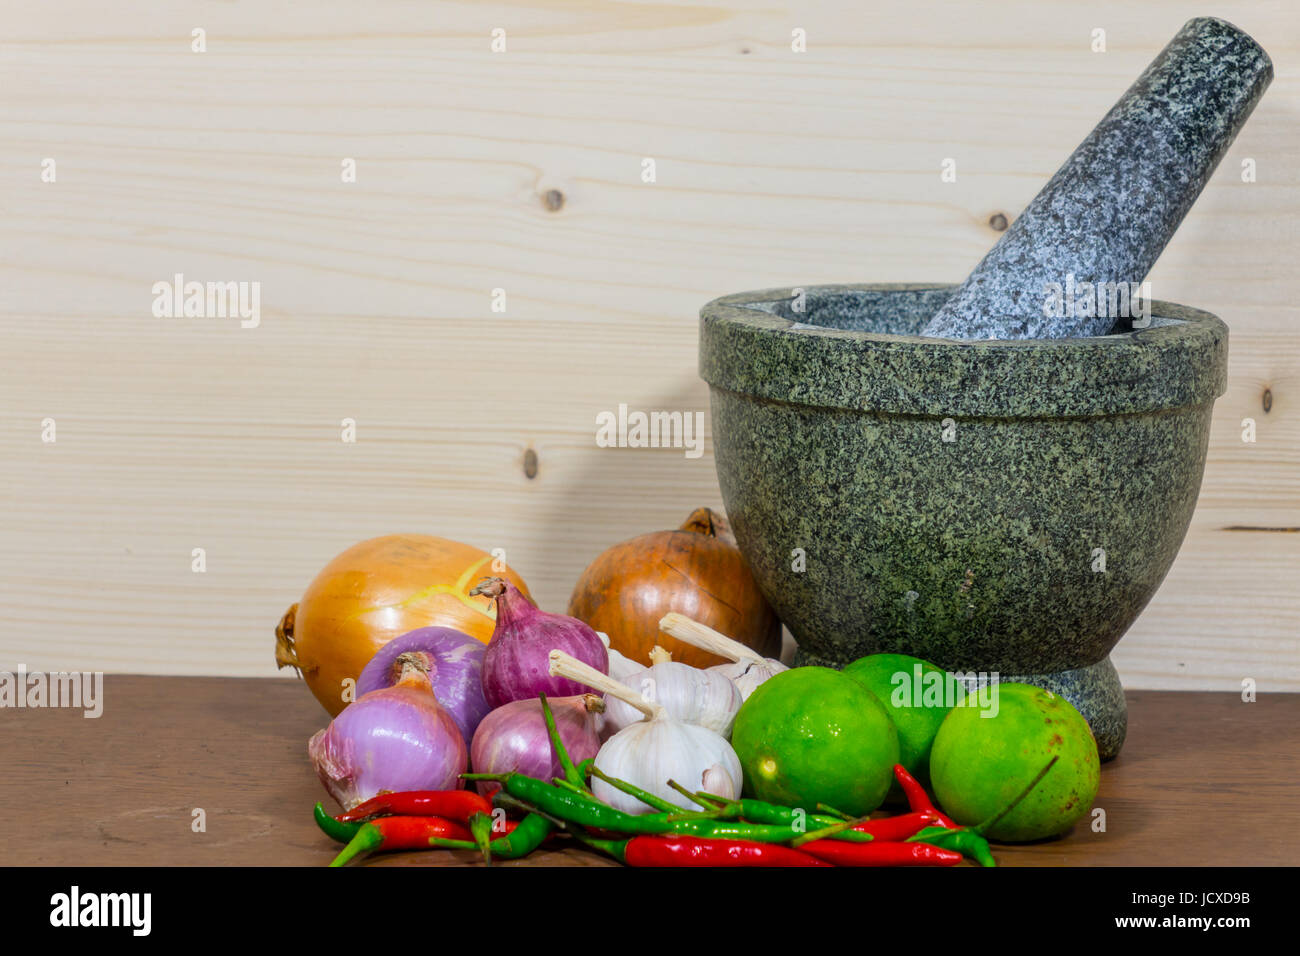 Malta, limone e pepe, l'aglio e la cipolla, la cottura su sfondo di legno Foto Stock